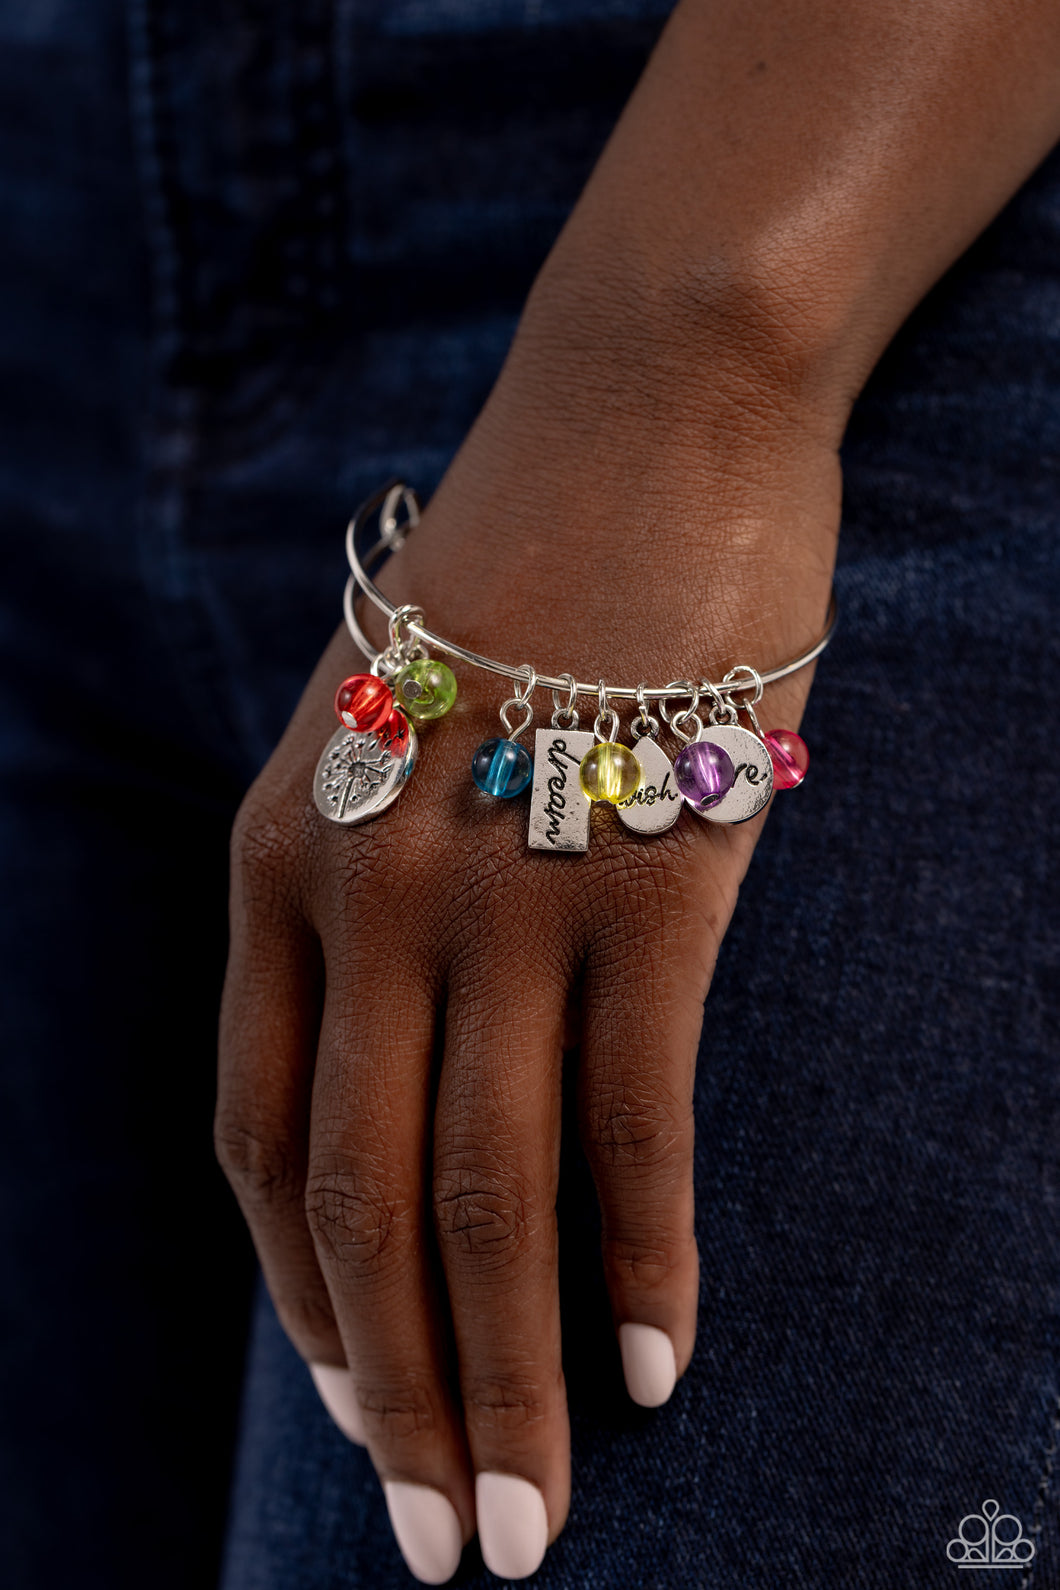 KUIYAI Dandelion Wish Bracelet The Best is Yet to India | Ubuy